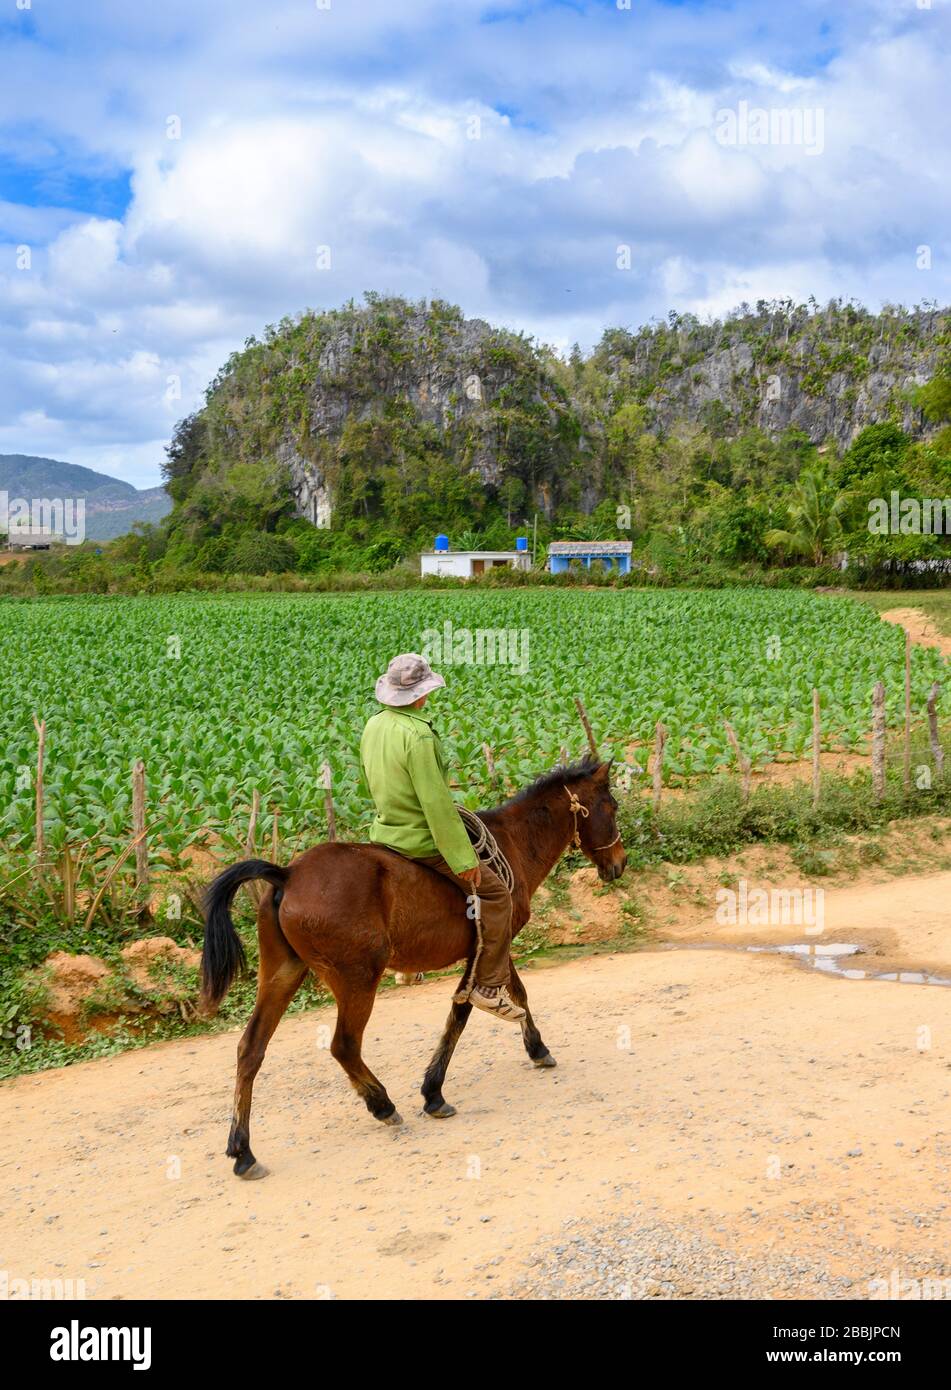 Hombre a caballo y campo de tabaco para cigarros, Vinales, Provincia Pinar del Río, Cuba Foto de stock